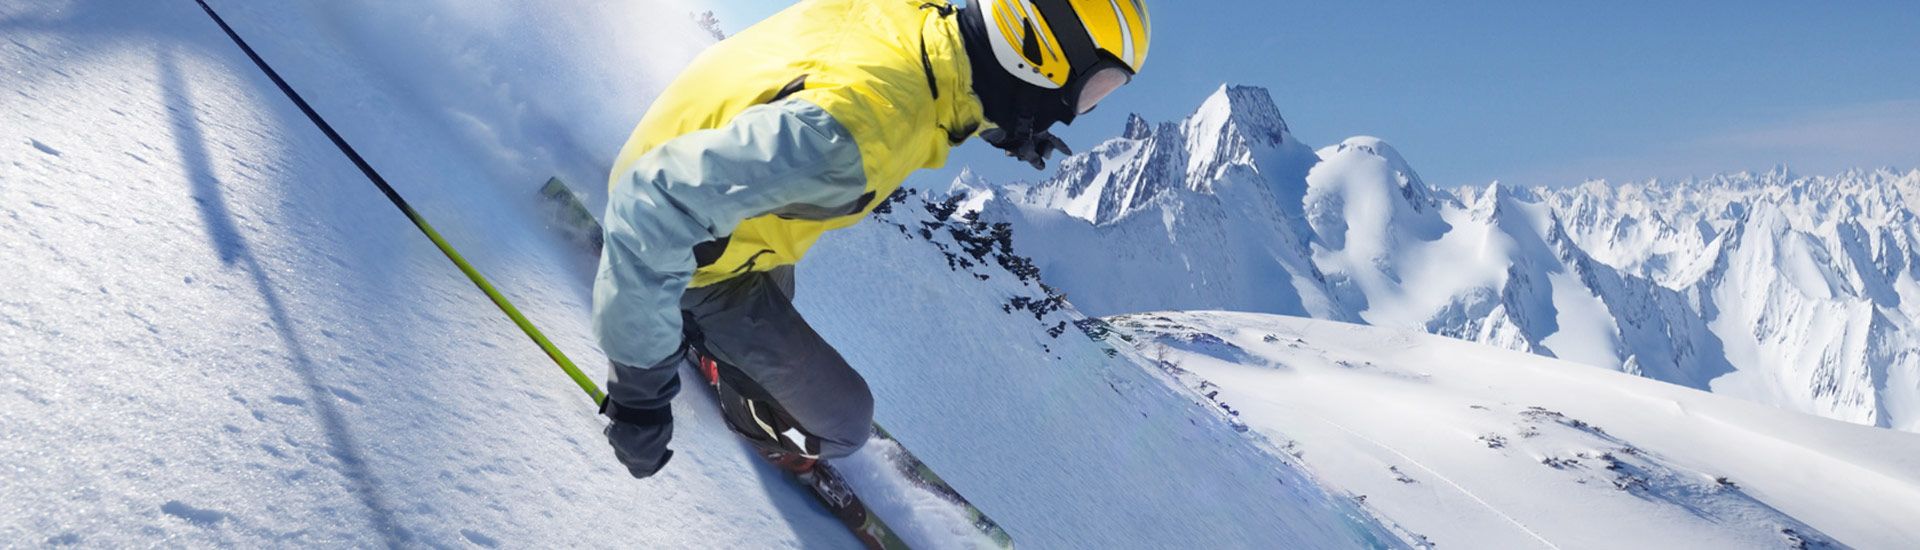 Vacances au ski dans les hautes alpes (chorges)